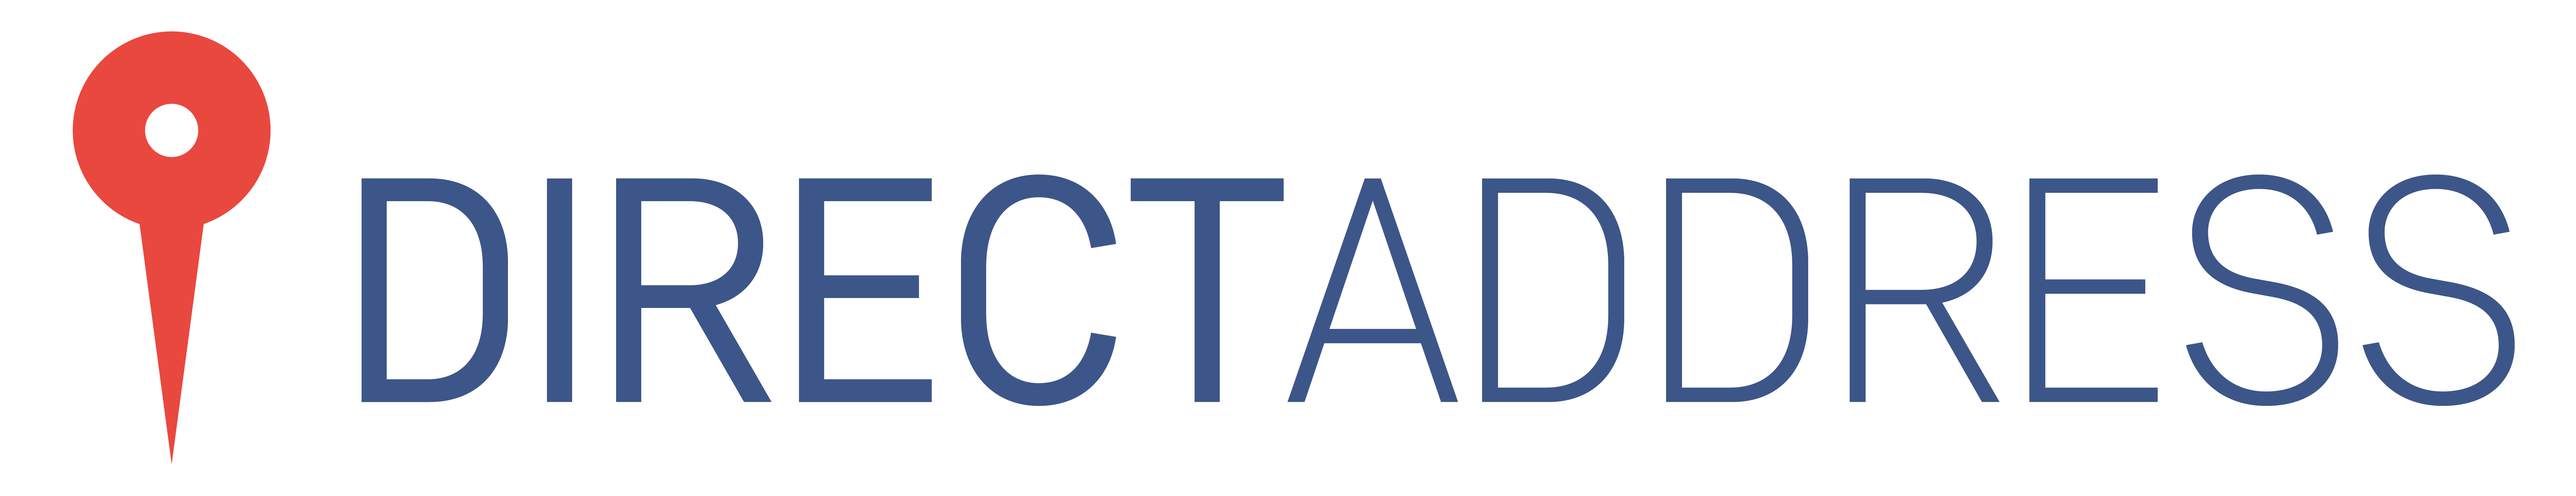 DirectAddress logo